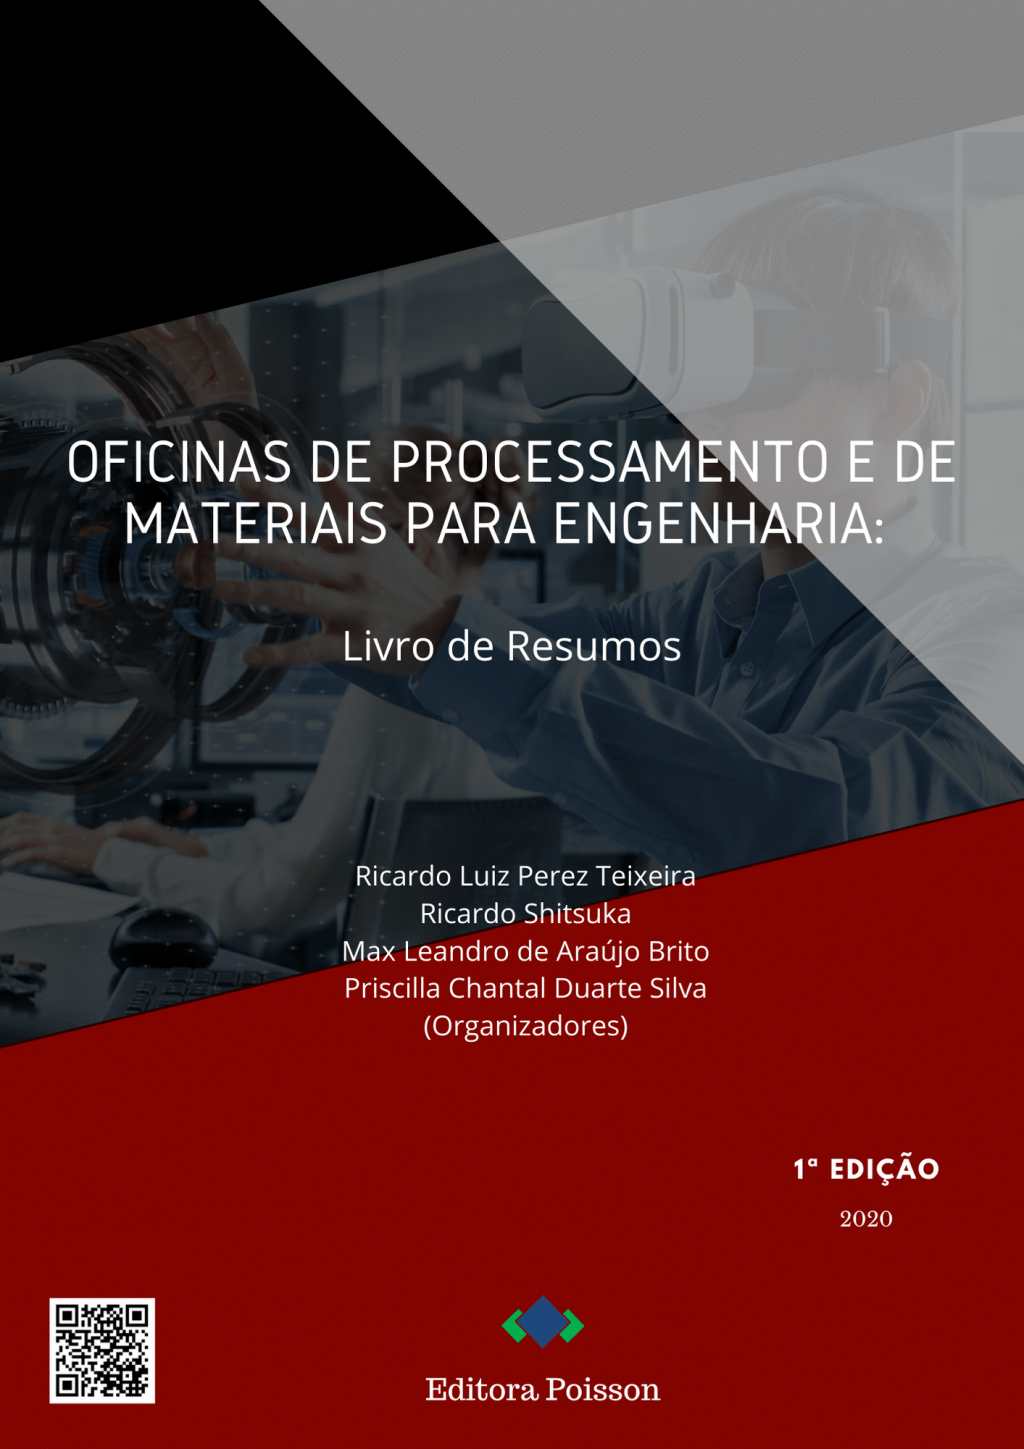 Oficinas de Processamento e de Materiais para Engenharia: Livro de Resumos